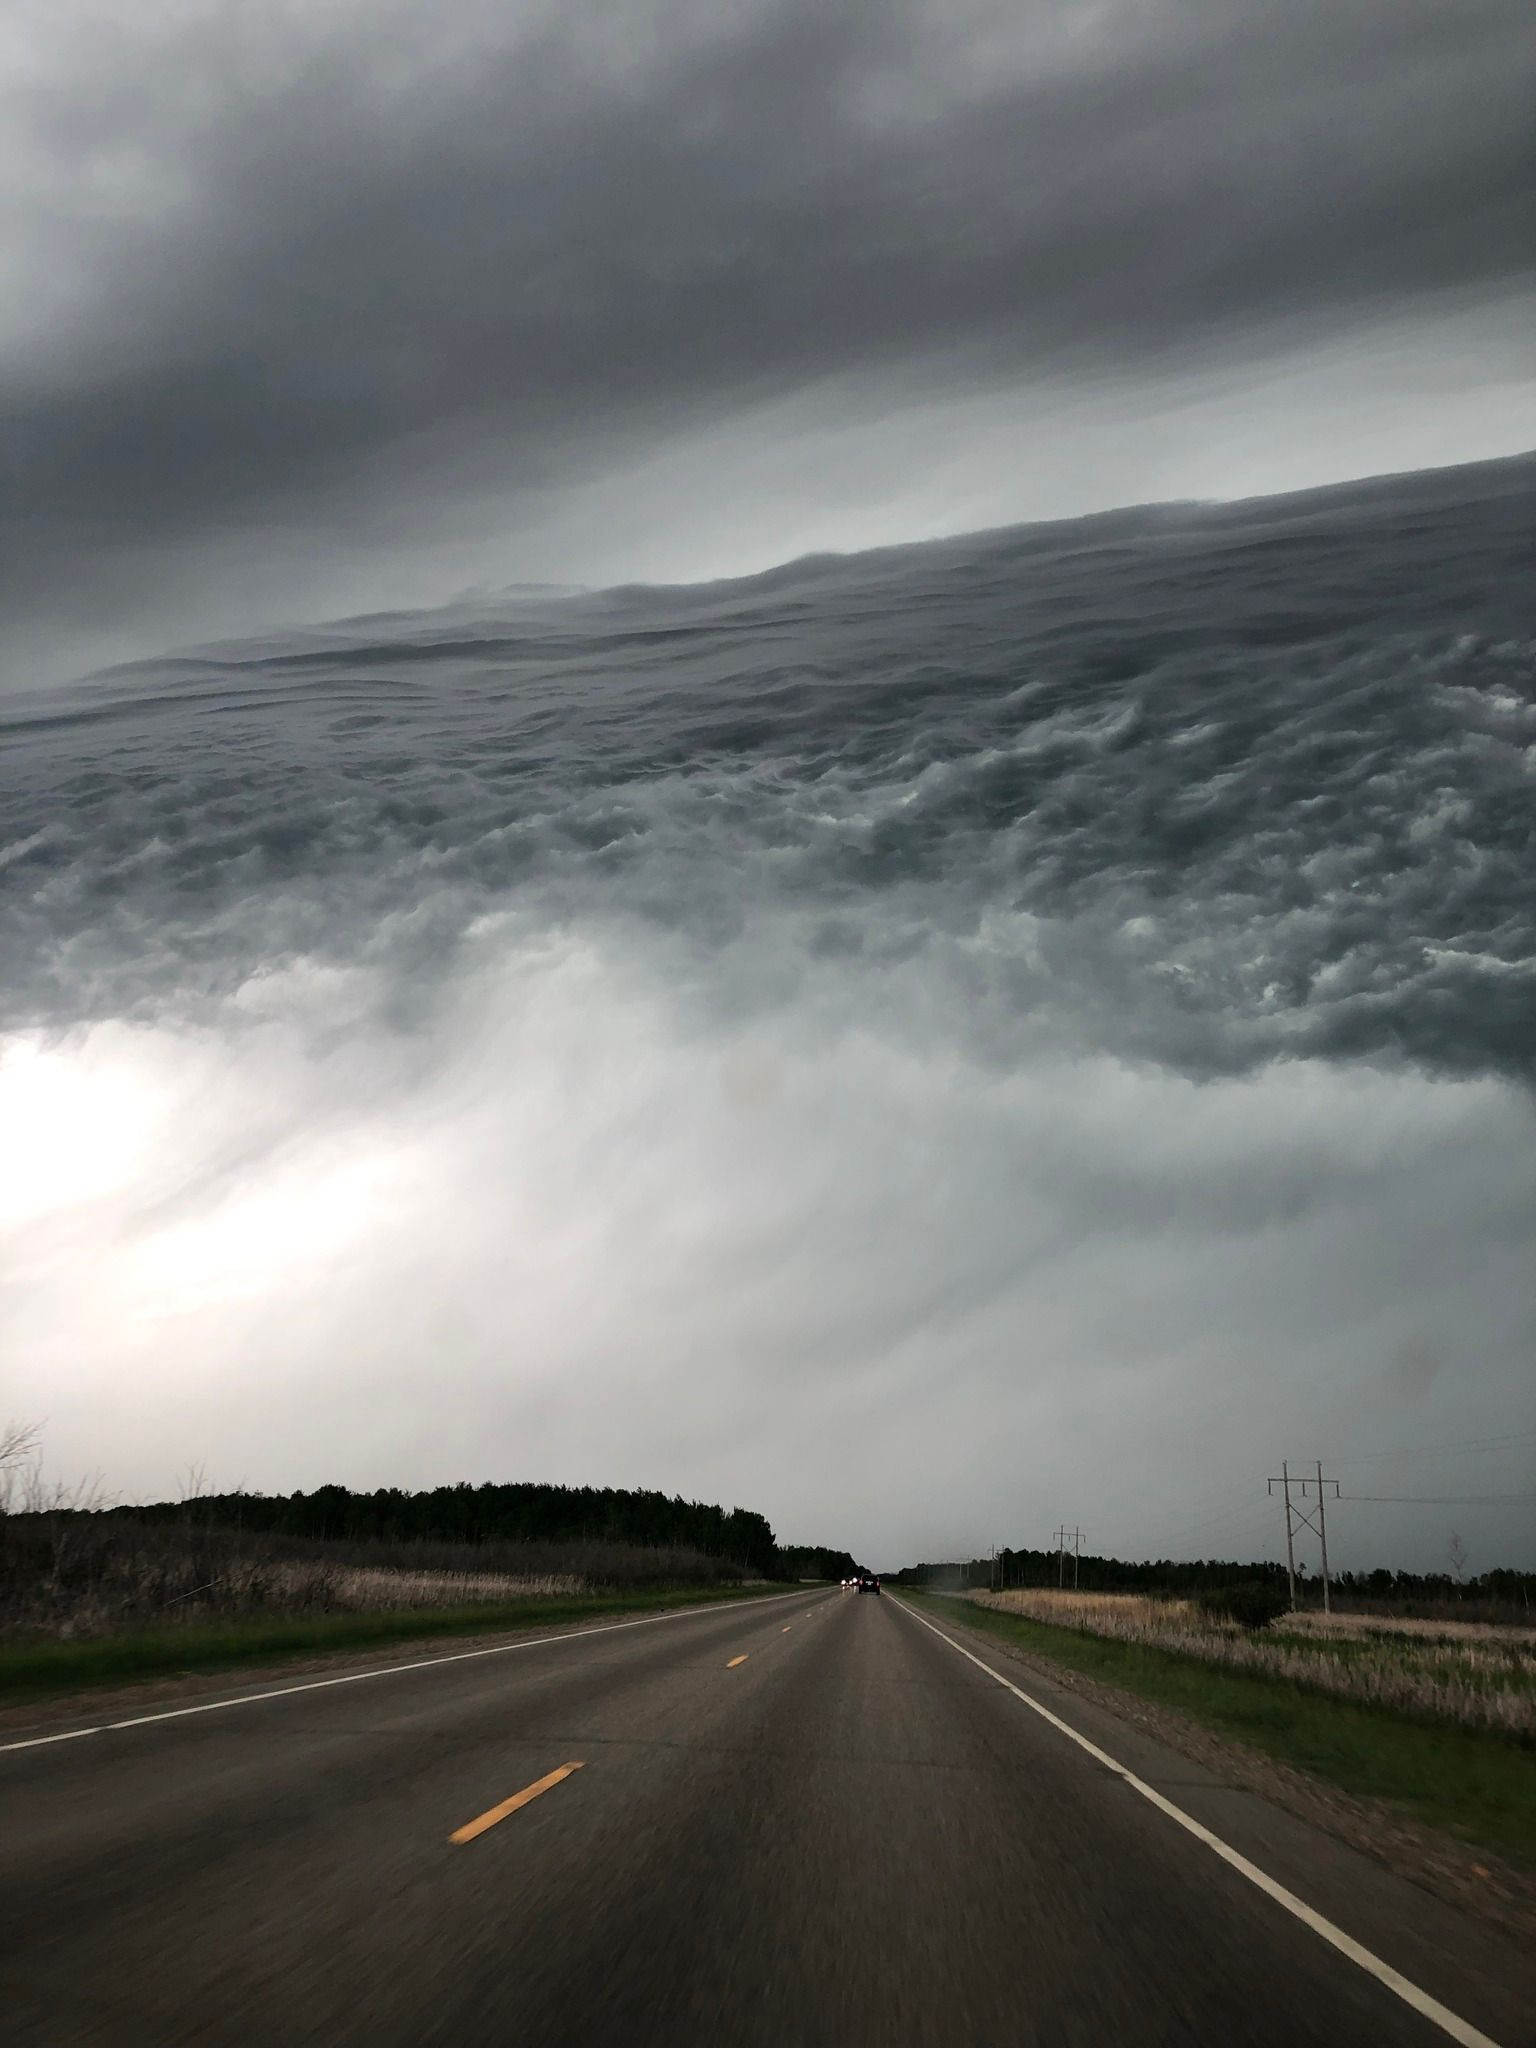 Nếu cho rằng đây là một bức ảnh ghép, thì bạn đã nhầm. Bức ảnh được chụp tại bang Minnesota (Mỹ) với đám mây giống như những con sóng ngoài biển.